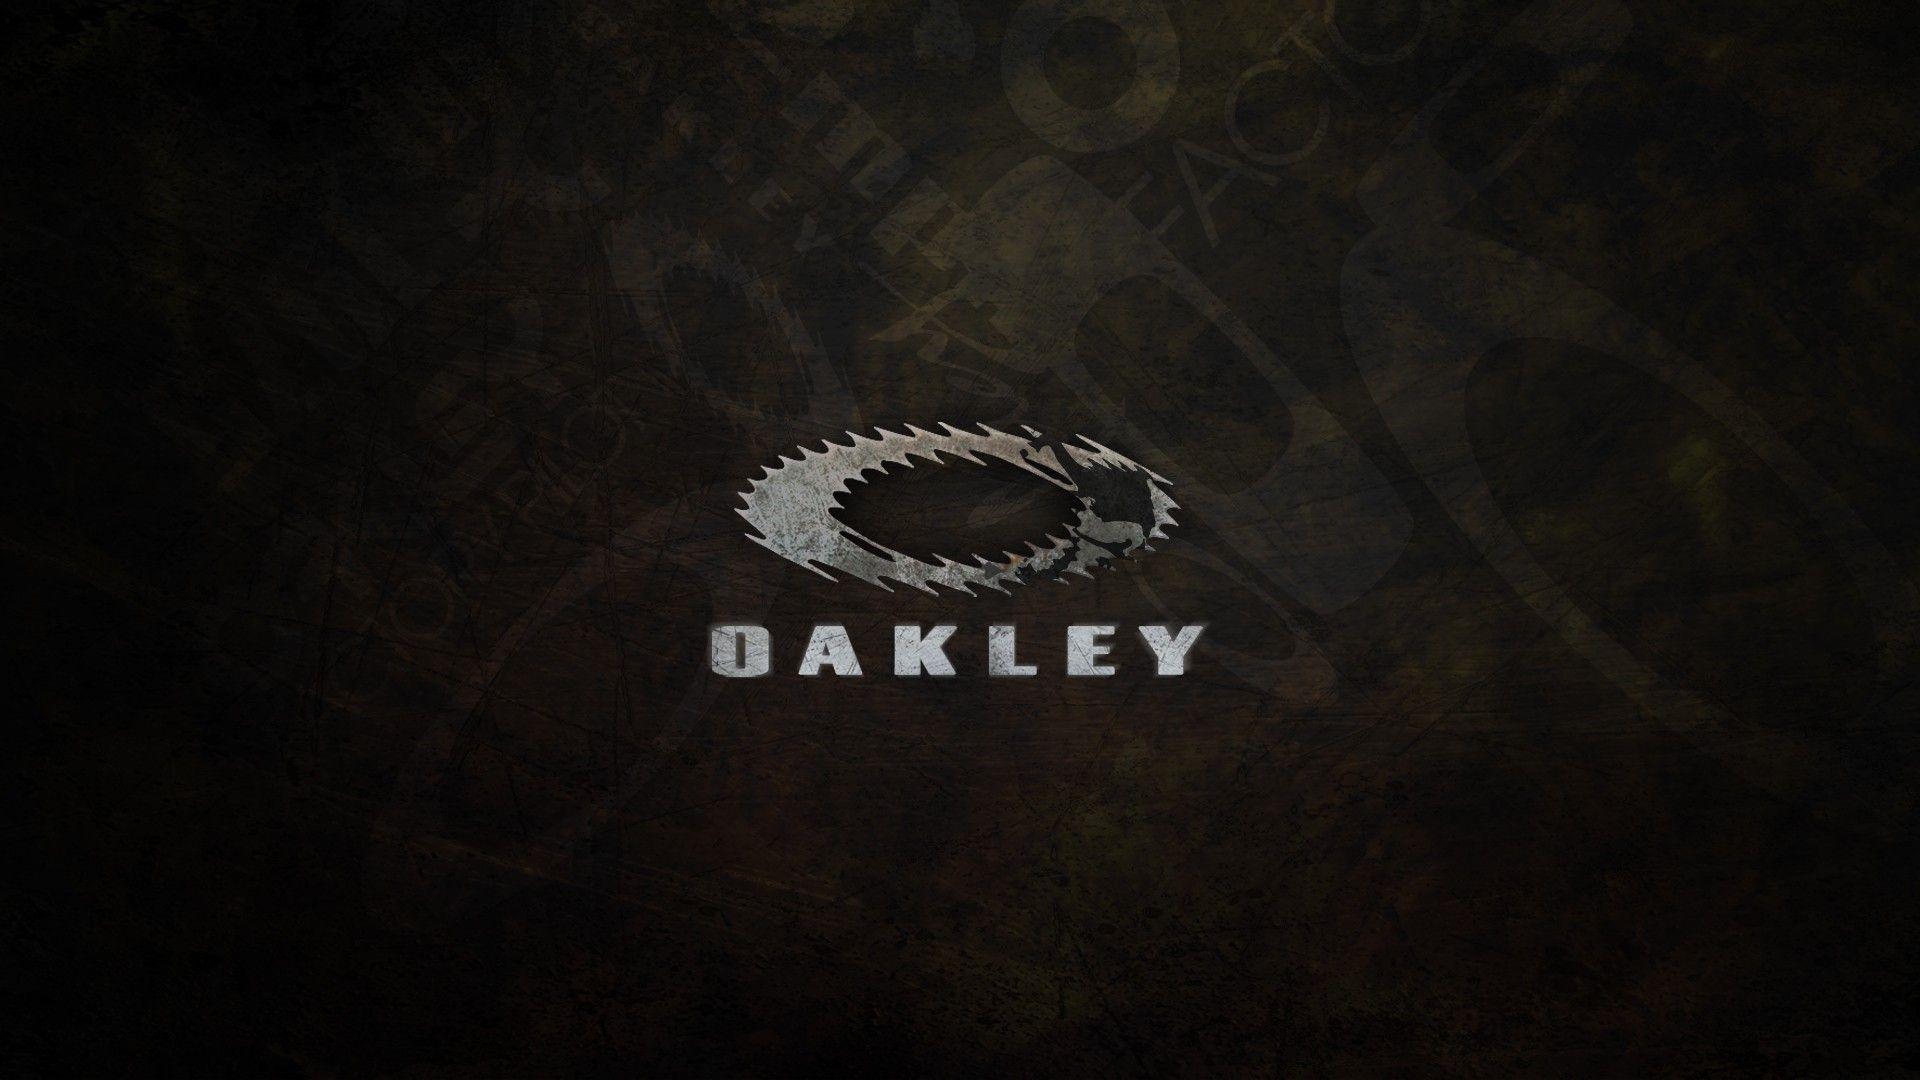 Oakley Wallpapers - Top Free Oakley 